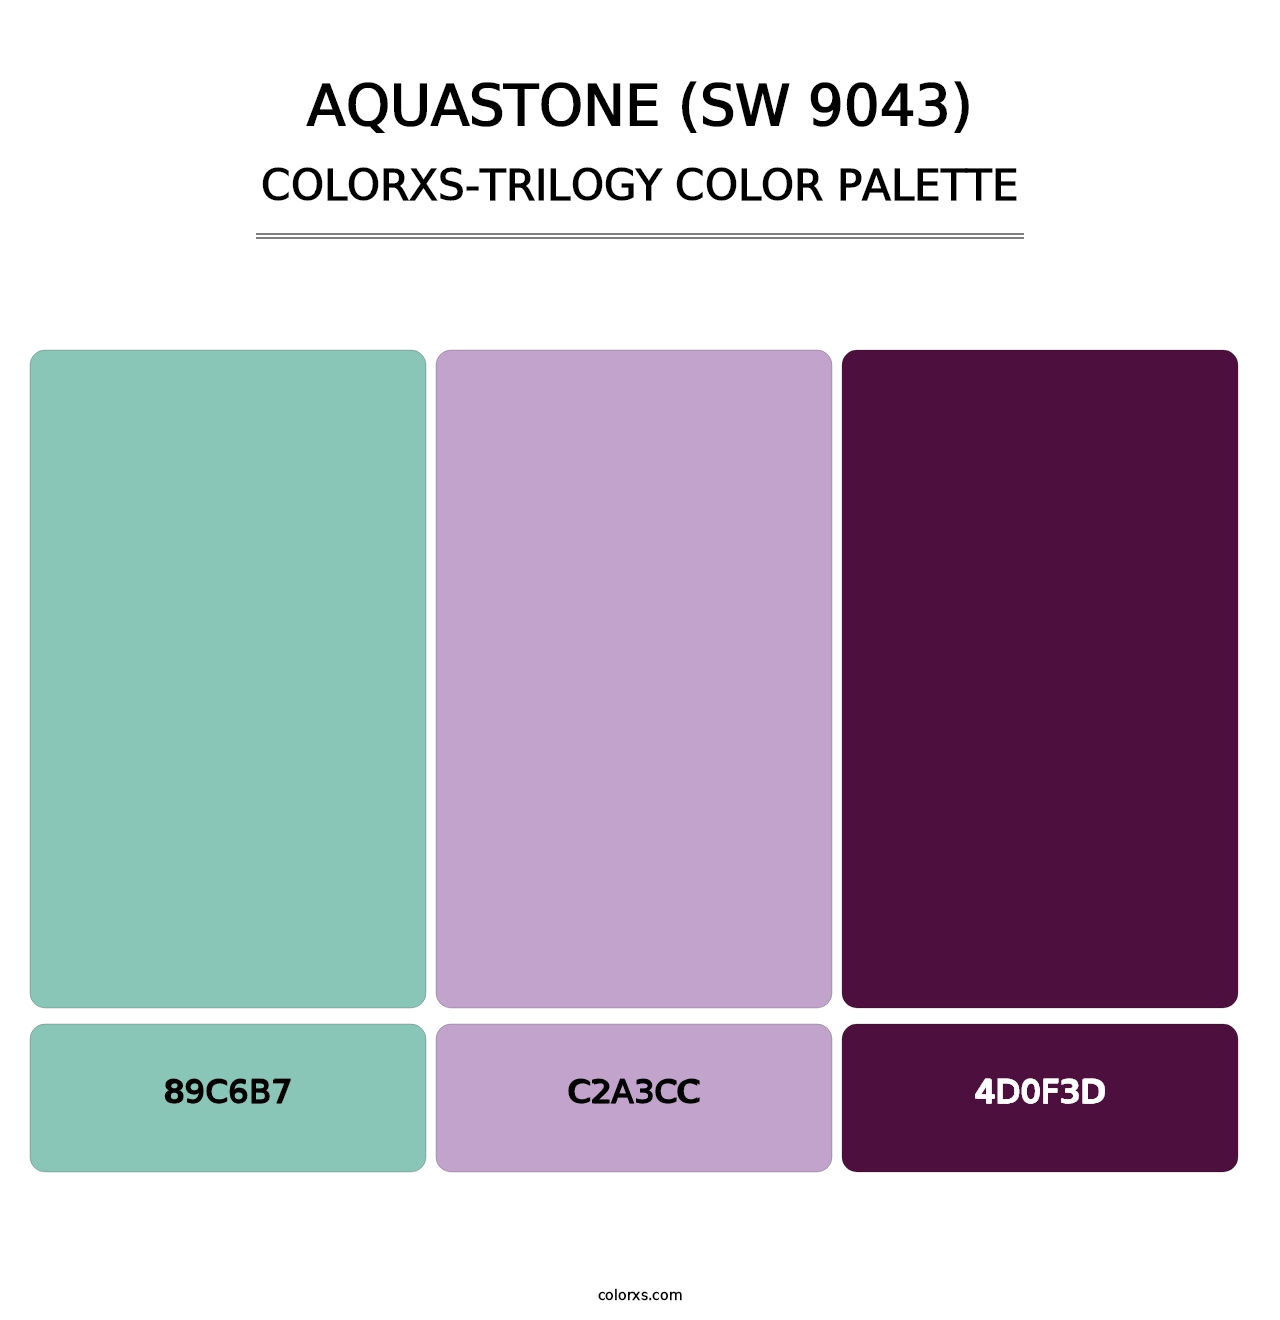 Aquastone (SW 9043) - Colorxs Trilogy Palette